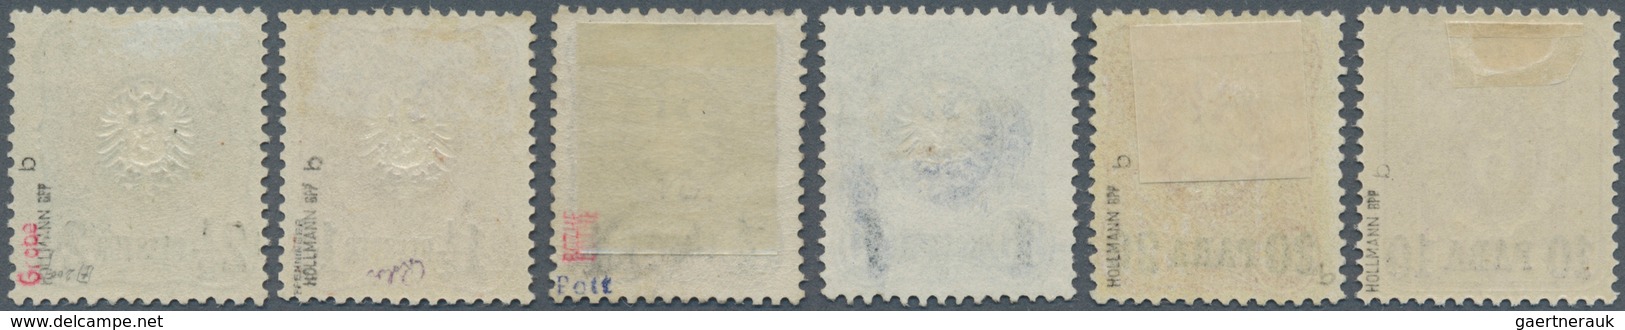 18504 Deutsche Post In Der Türkei: 1884, Freimarken Mit Aufdruck 10 PA -2 1/2 Pia Als Ungebrauchter Satz M - Deutsche Post In Der Türkei